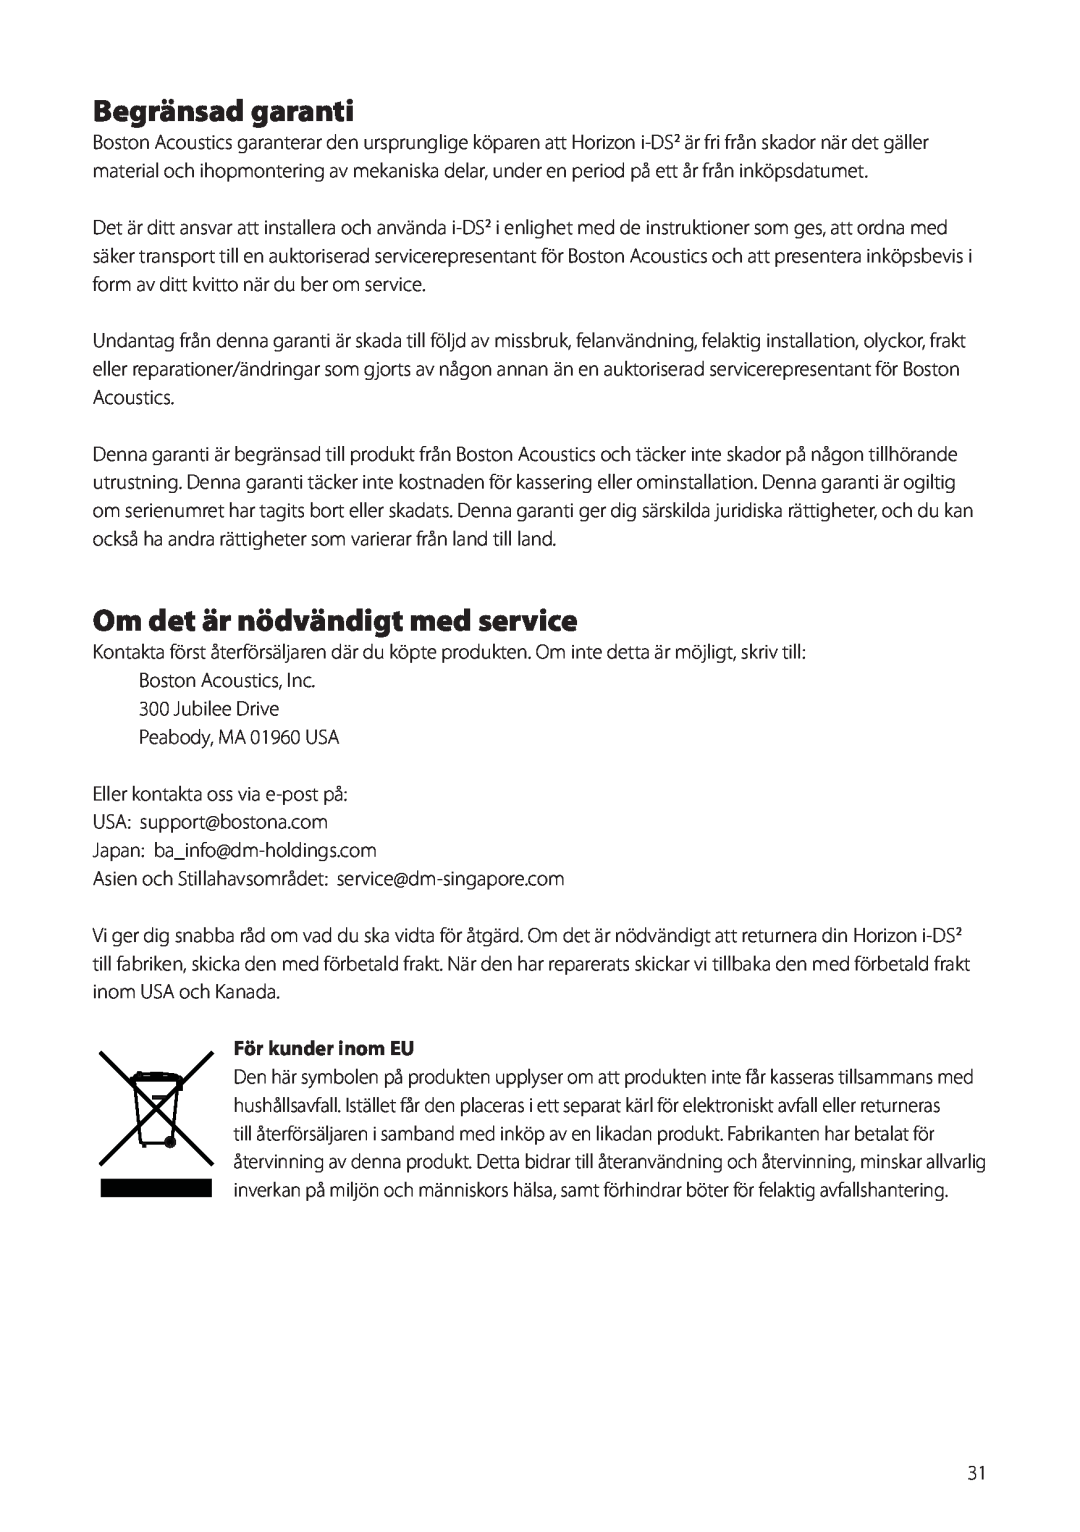 Boston Acoustics Horizon i-DS2 owner manual Begränsad garanti, Om det är nödvändigt med service, För kunder inom EU 